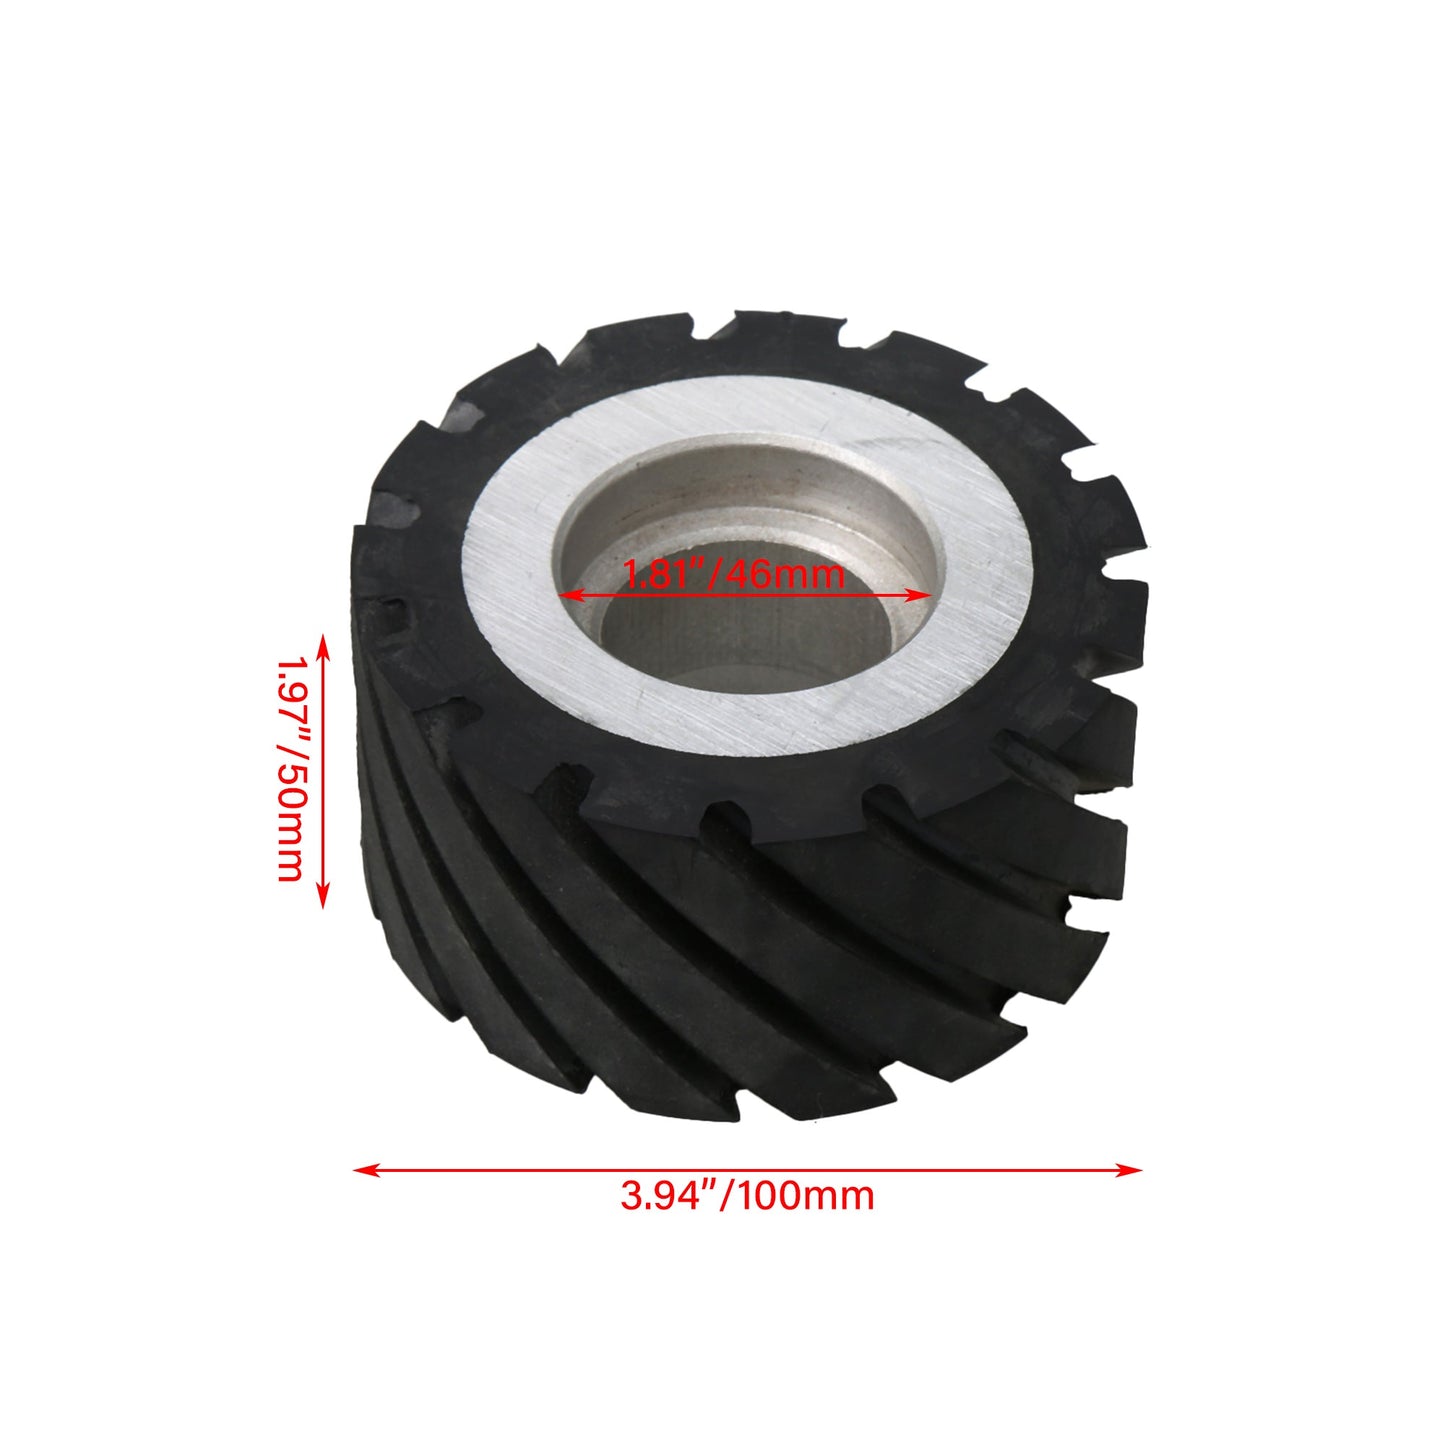 BQLZR 10x5cm Belt Grinder Rubber Wheel Serrated Rubber Contact Wheel 6204 Bearing Belt Grinder Wheel